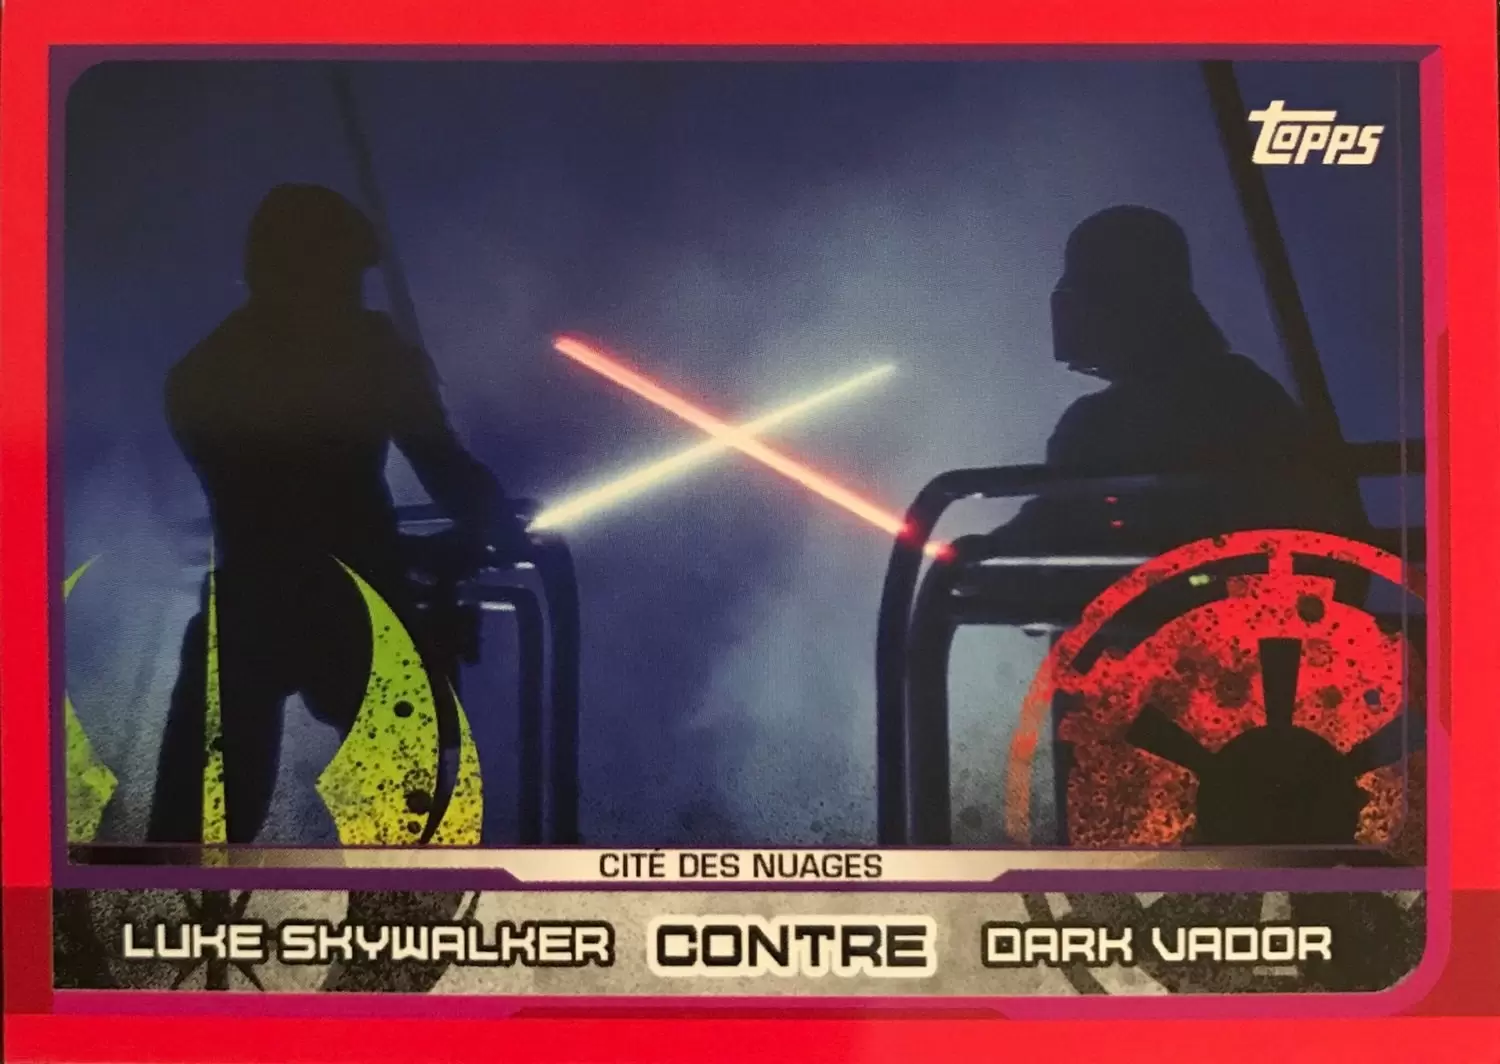 Topps - Voyage vers Star wars : Les Derniers Jedi - Luke Skywalker contre Dark Vador (Cité des Nuages)